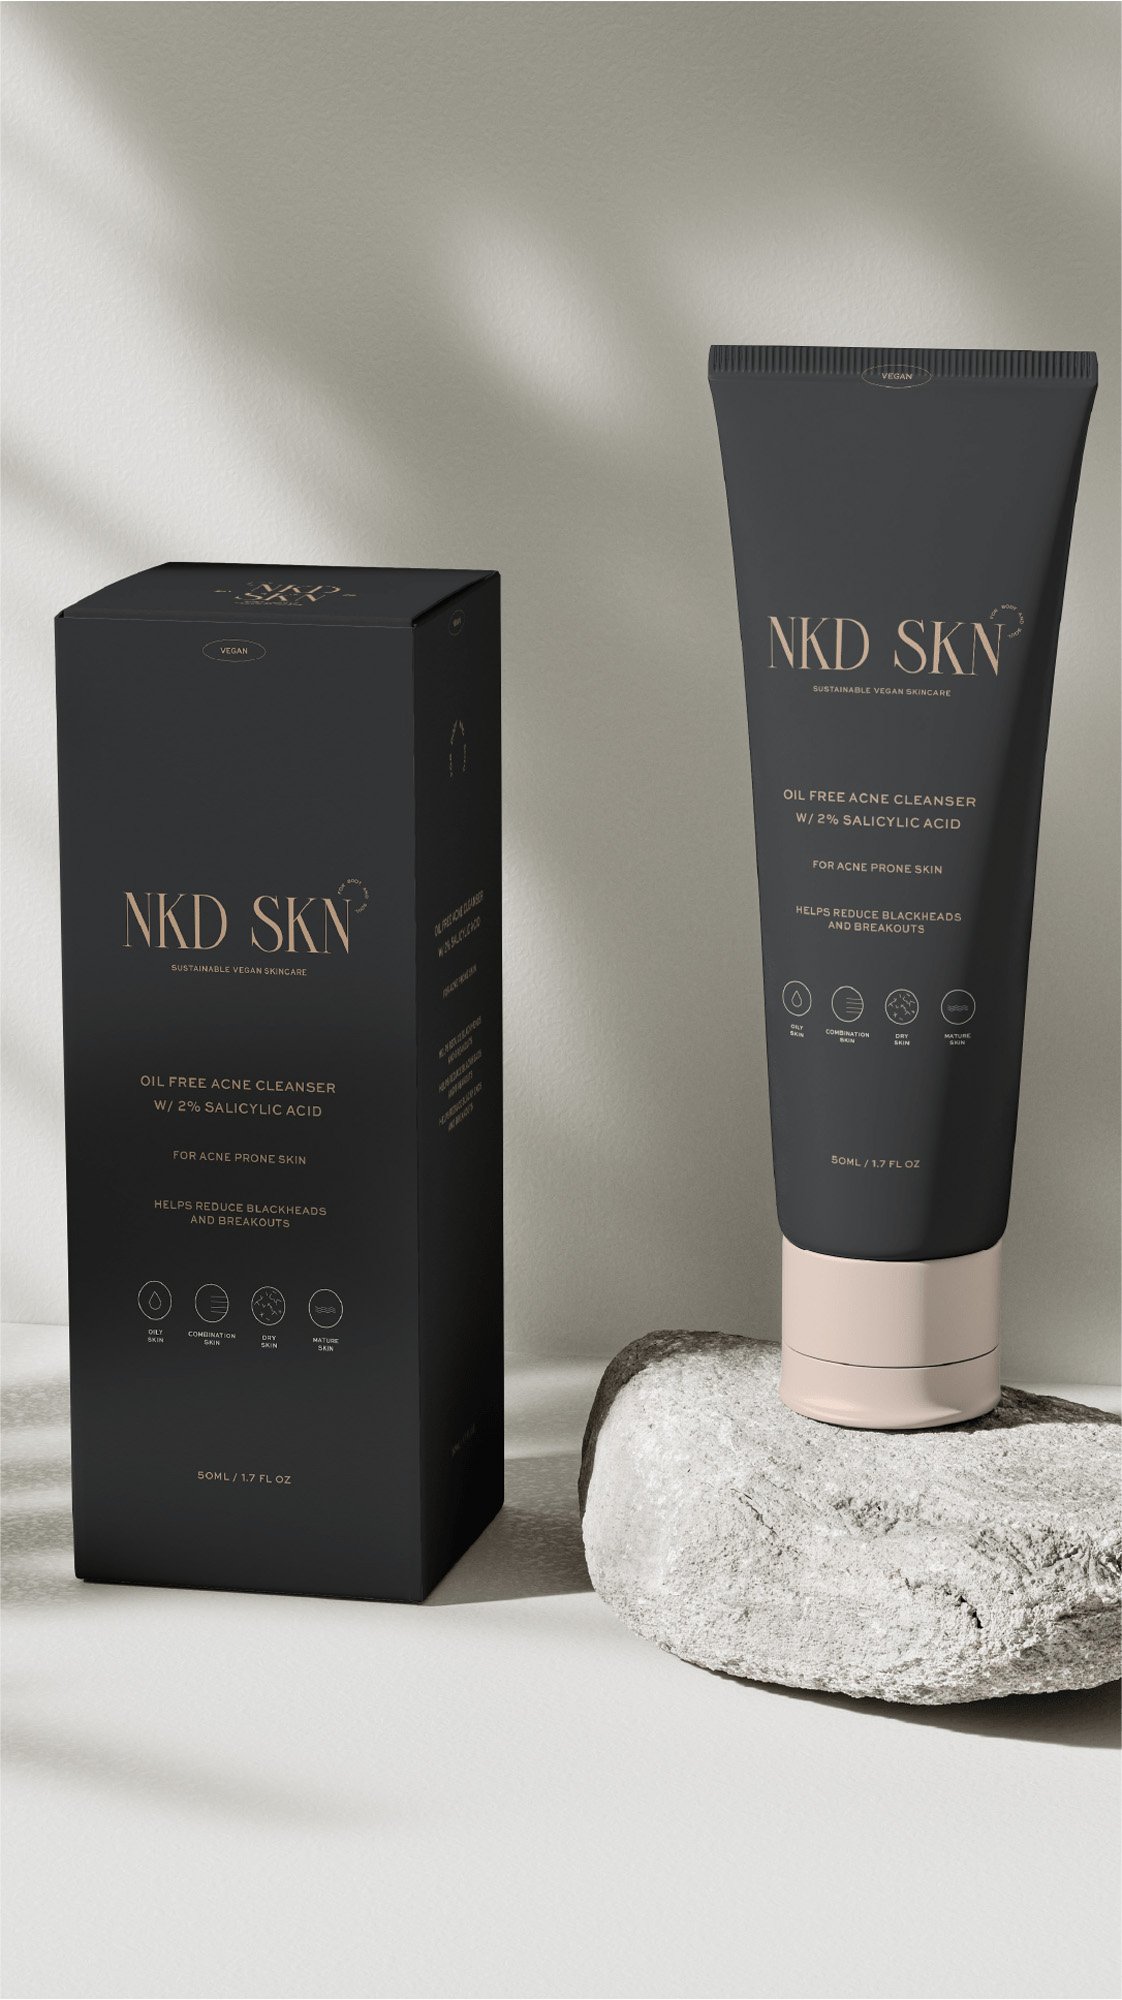 NKD-SKN Skincare Brand Packaging